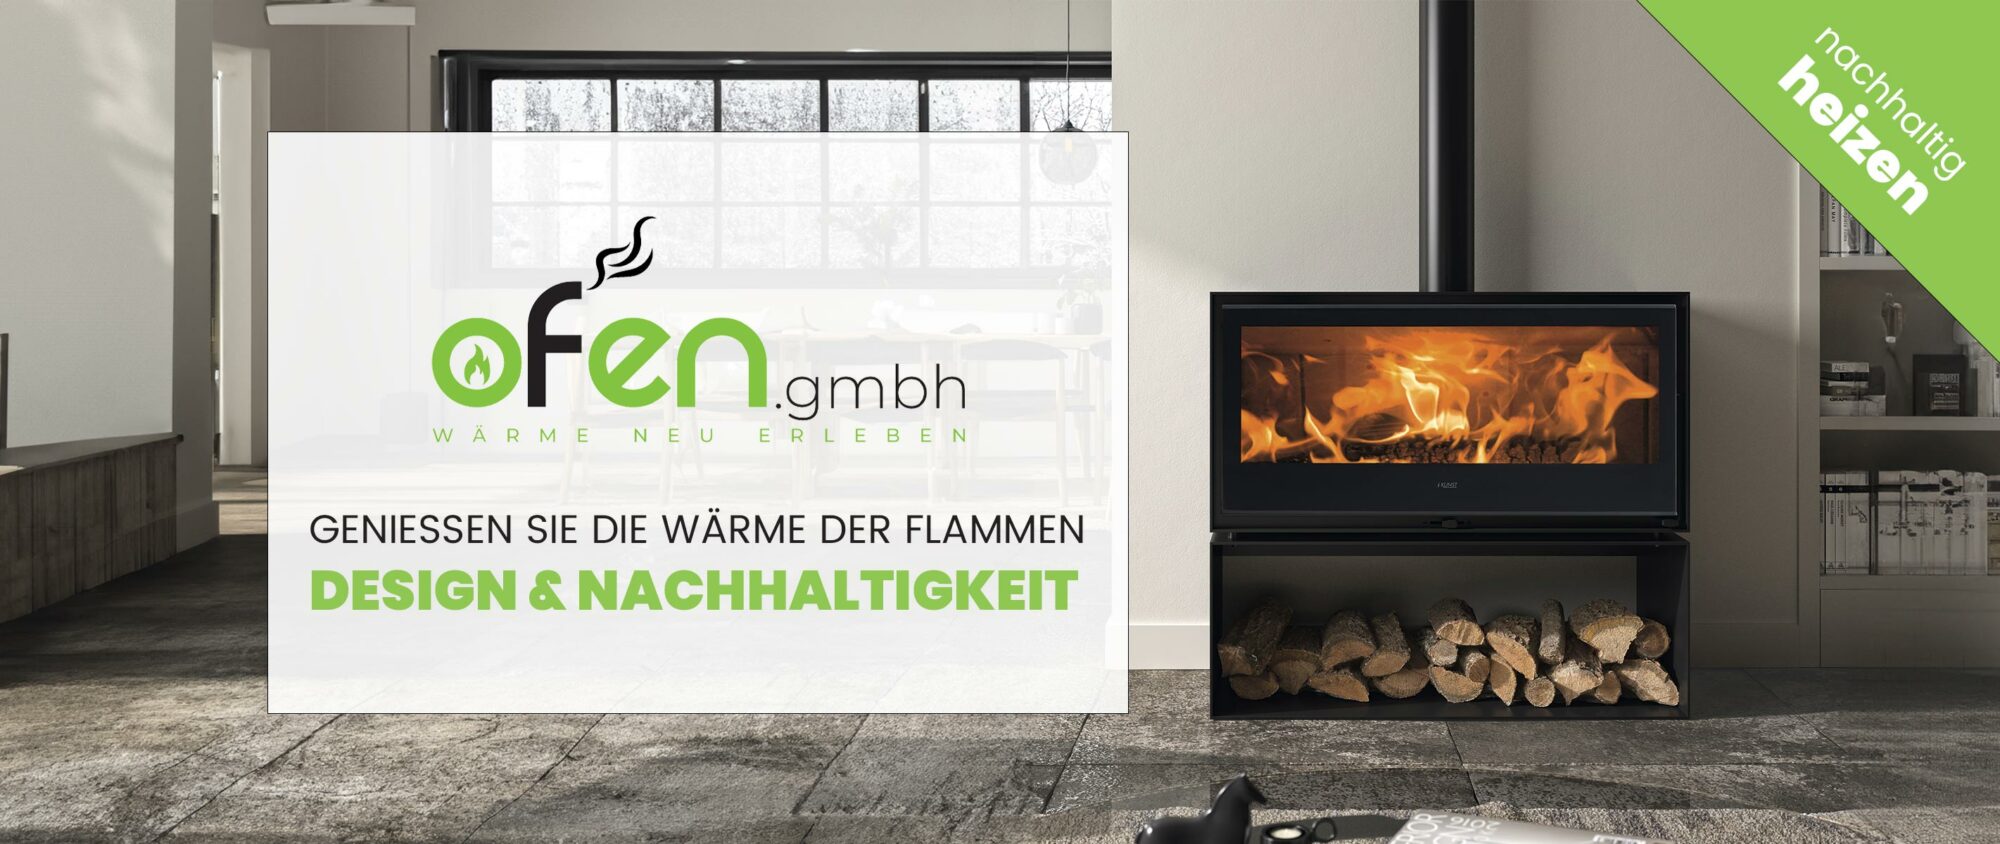 Ofen GmbH der kaminofen Onlineshop